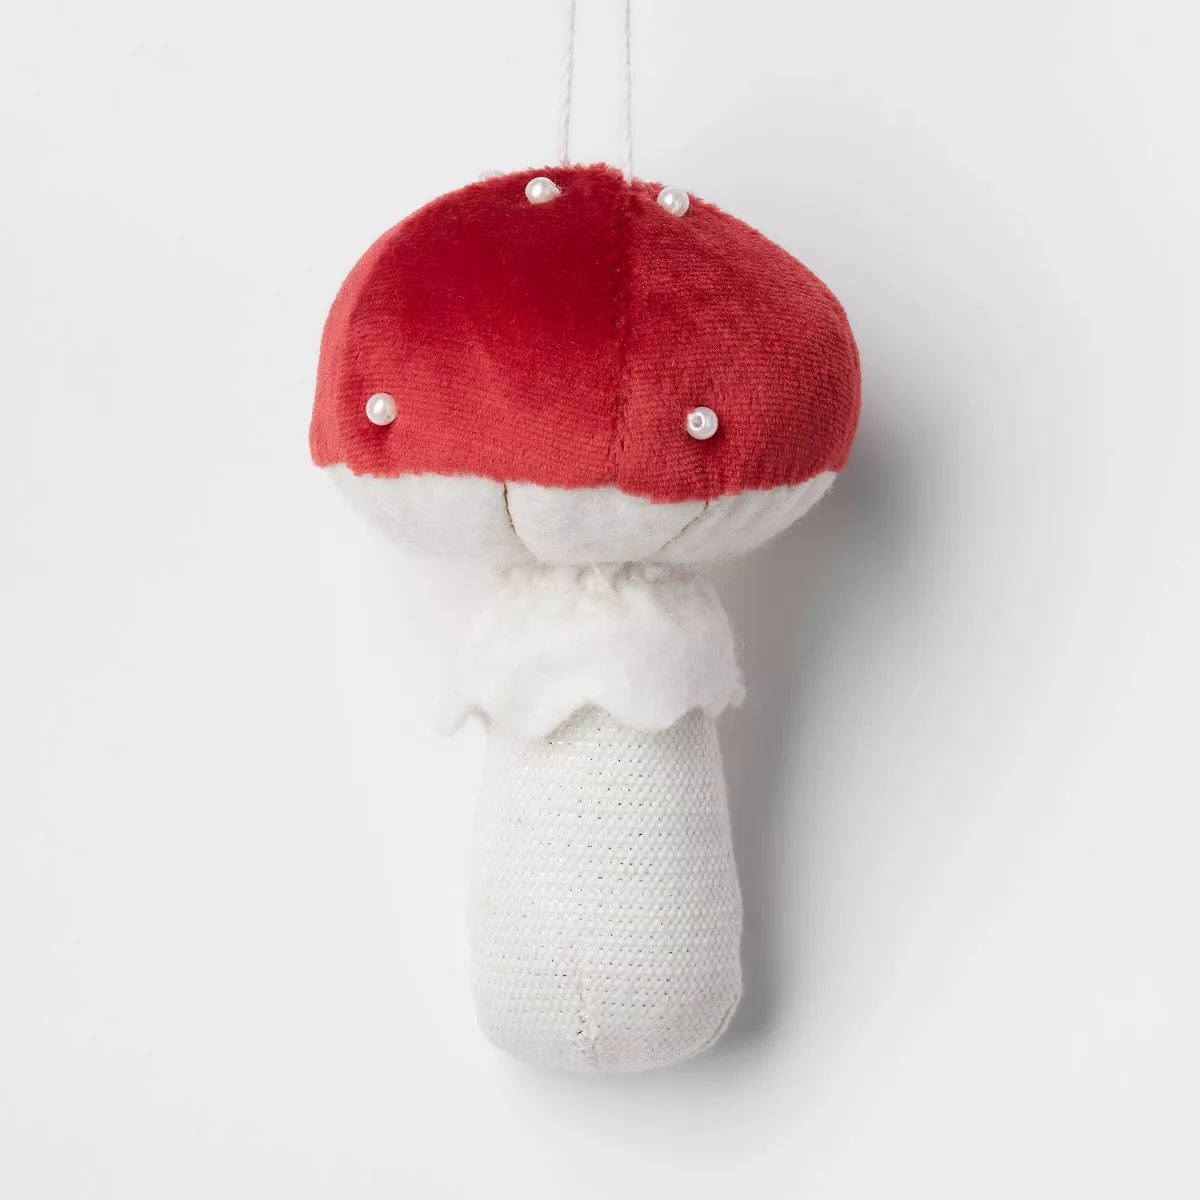 Fabric Mushroom Christmas Tree Ornament Red - Wondershop™ | Target